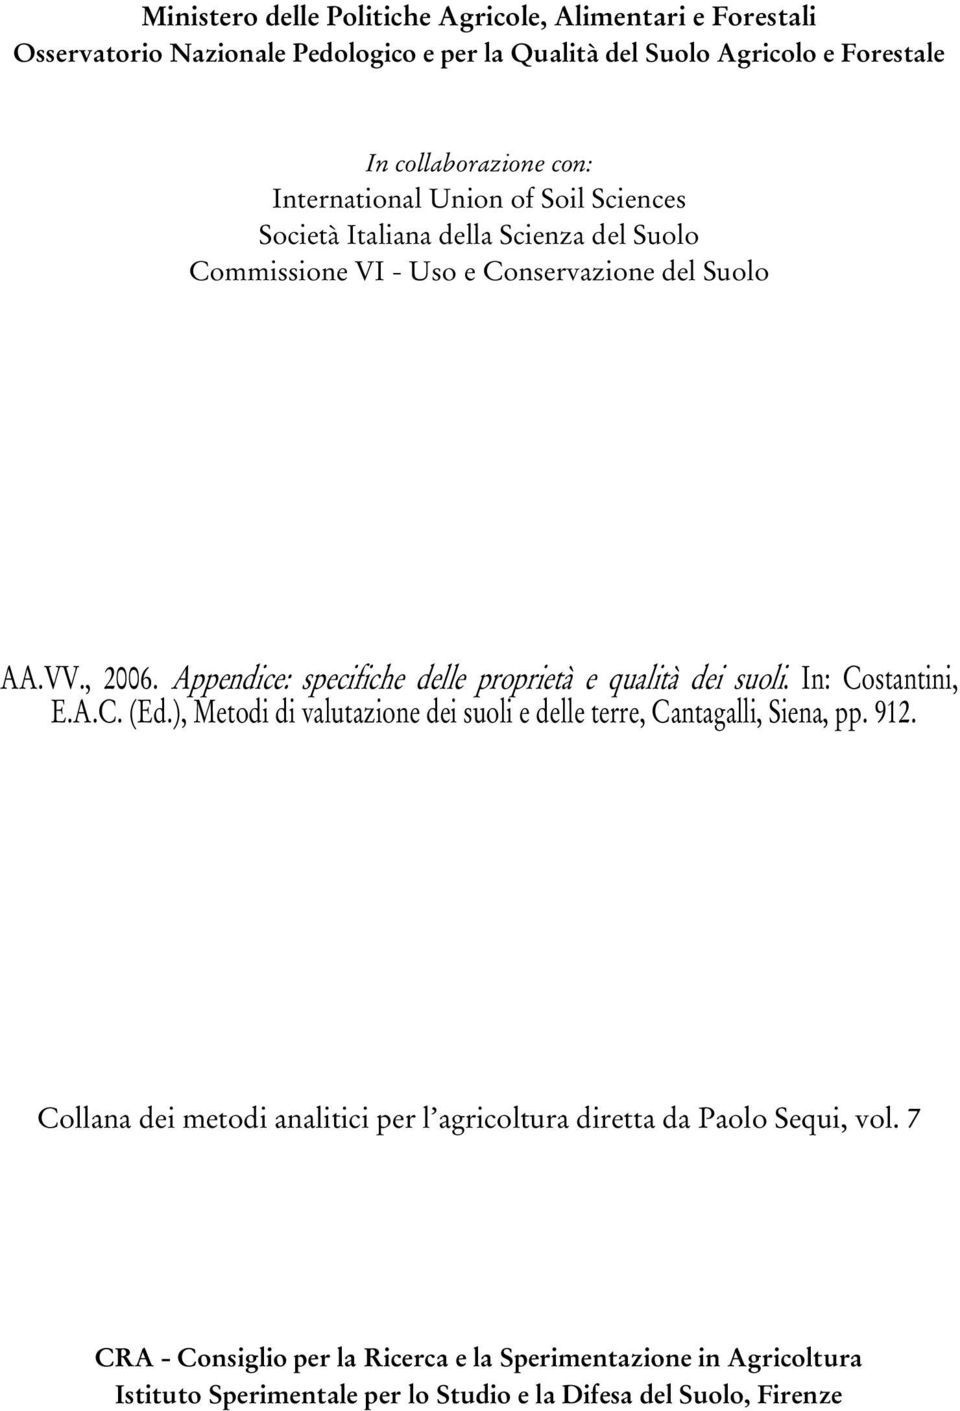 Appendice: specifiche delle proprietà e qualità dei suoli. In: Costantini, E.A.C. (Ed.), Metodi di valutazione dei suoli e delle terre, Cantagalli, Siena, pp. 912.